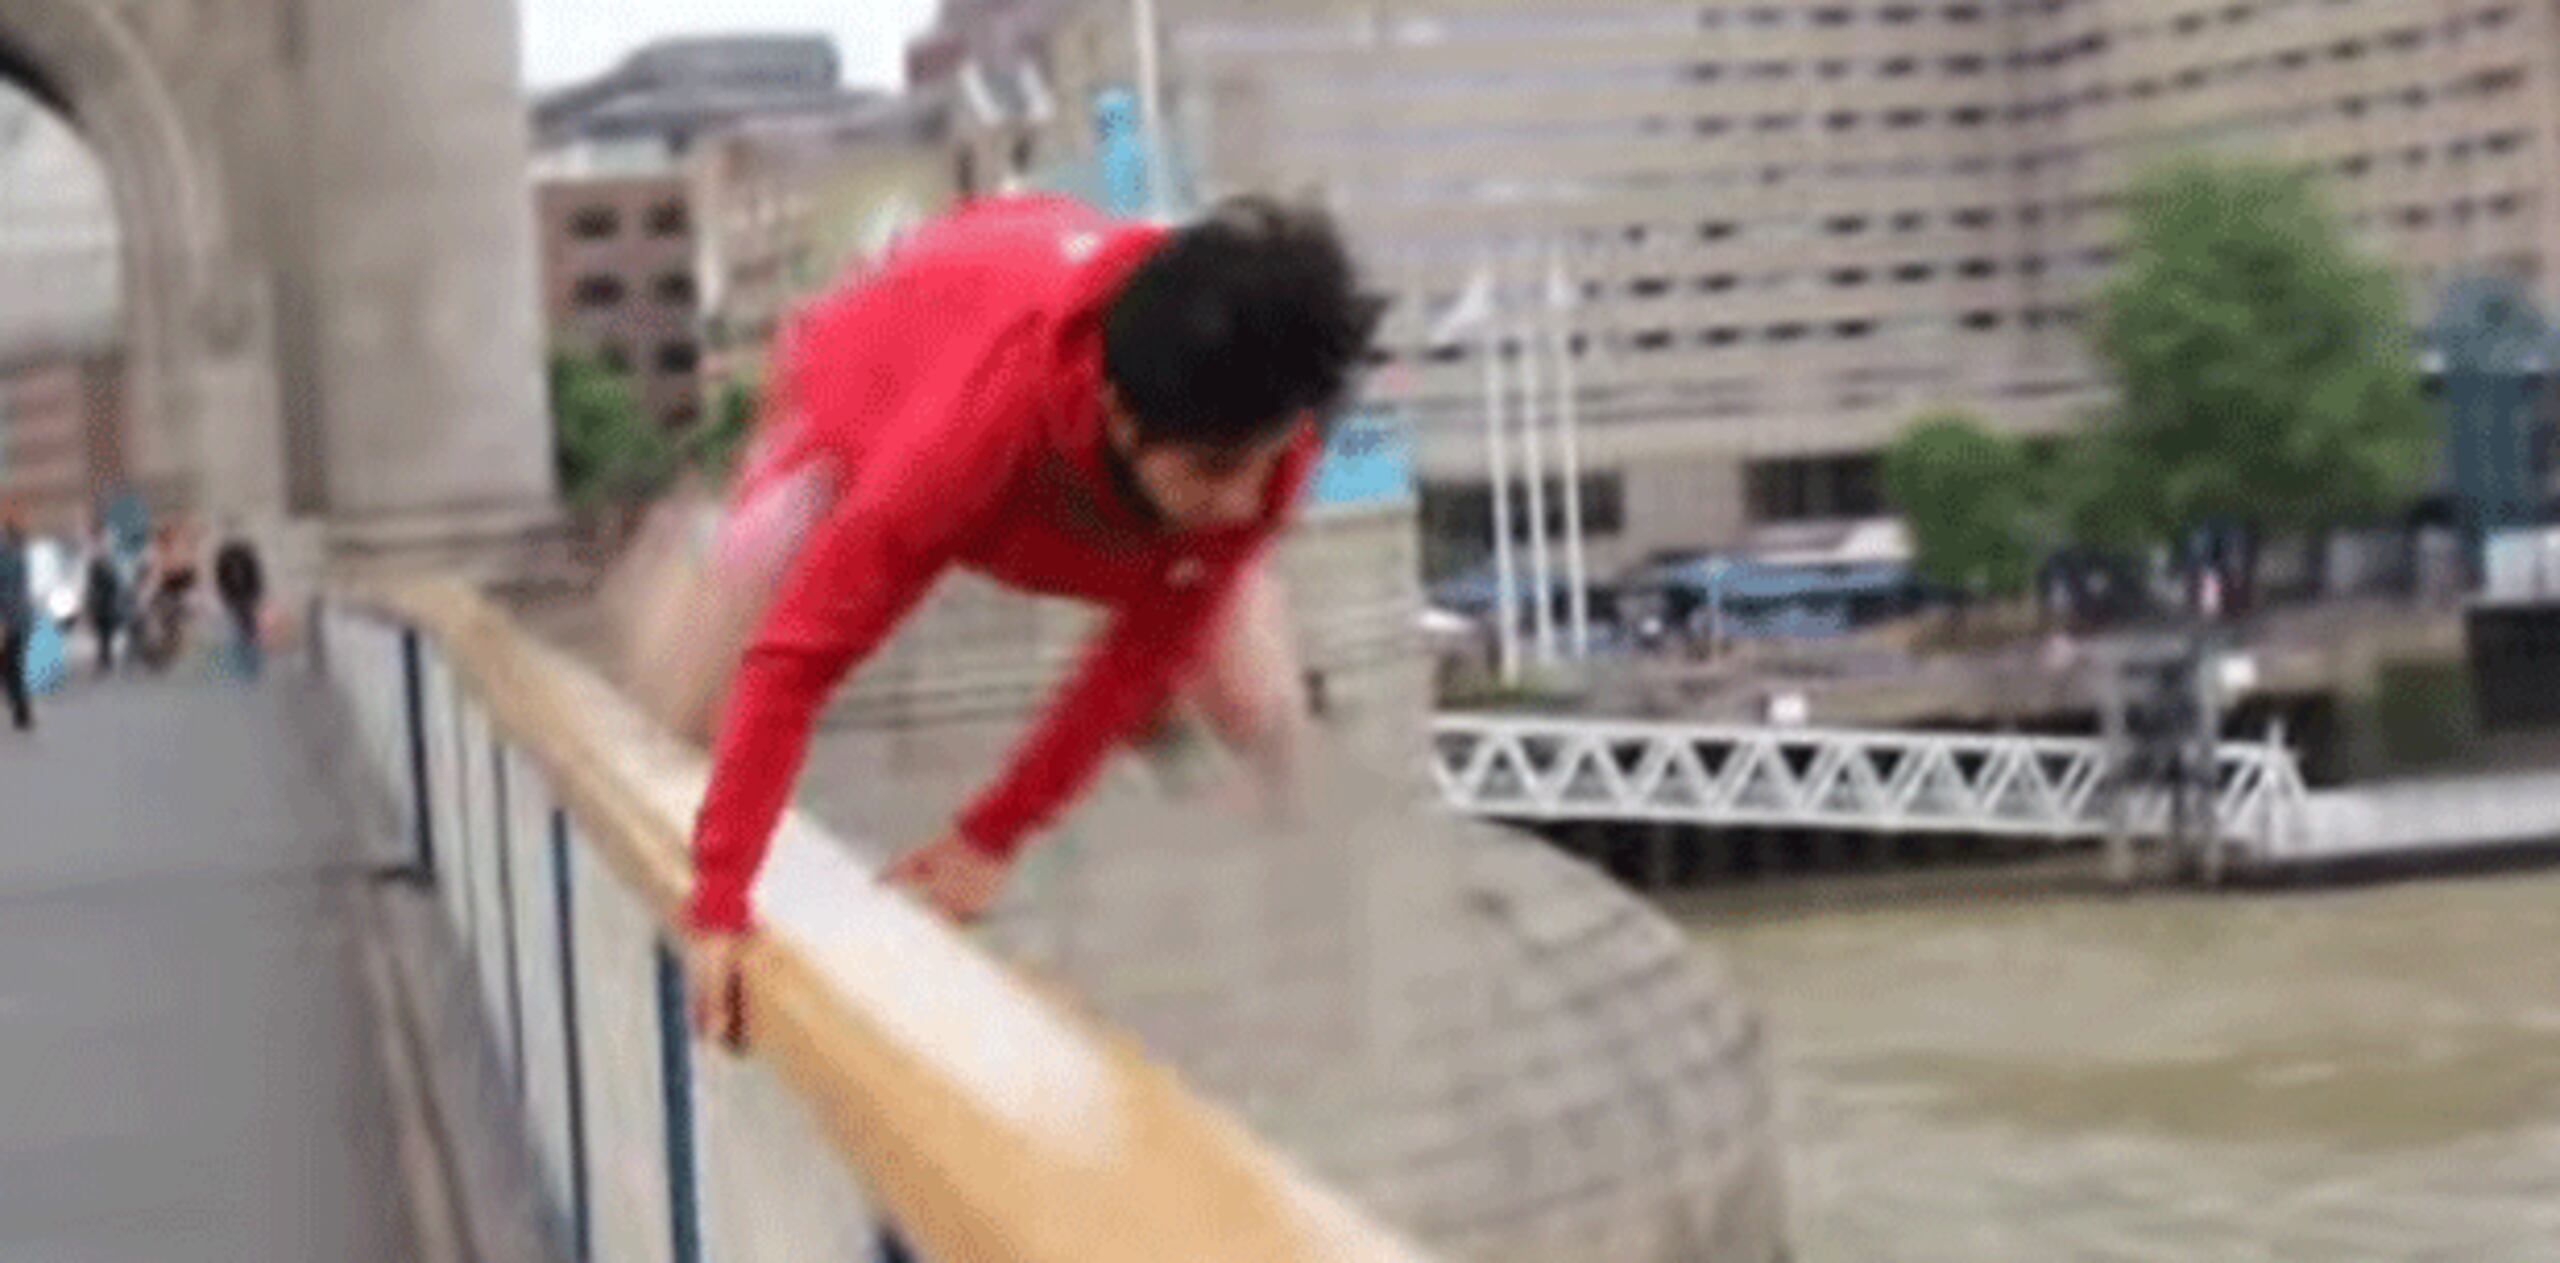 Shah Faisal Shinwari alias, "CARNAGE", hizo que sus amigos lo filmaran mientras realizaba el peligroso salto de 213 pies.  (YouTube)